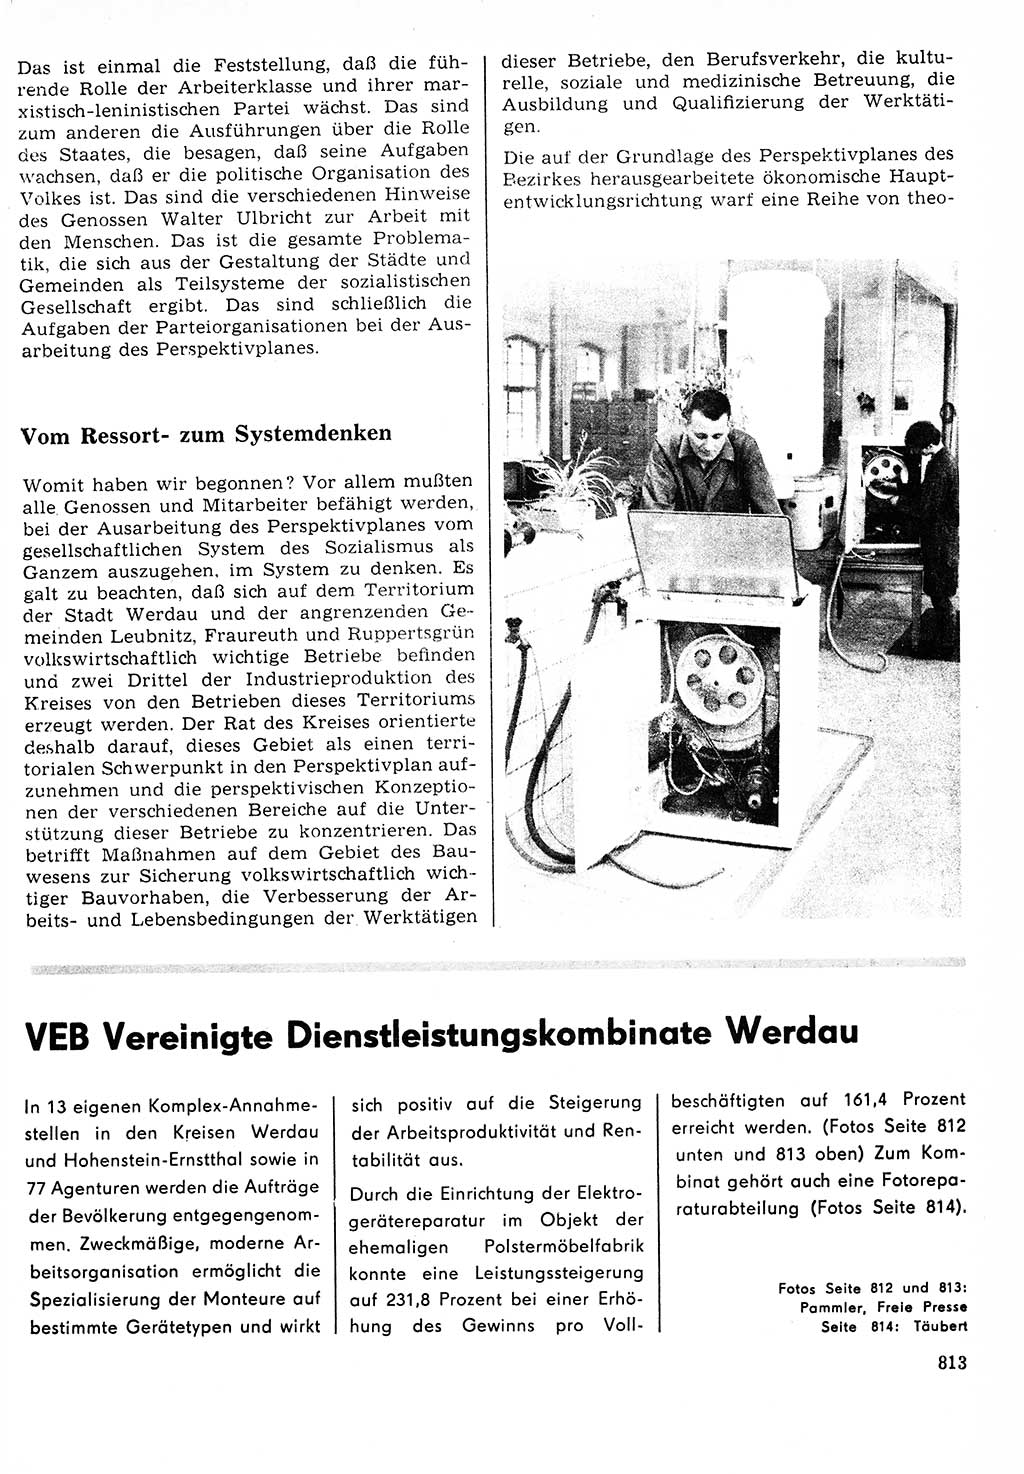 Neuer Weg (NW), Organ des Zentralkomitees (ZK) der SED (Sozialistische Einheitspartei Deutschlands) für Fragen des Parteilebens, 23. Jahrgang [Deutsche Demokratische Republik (DDR)] 1968, Seite 797 (NW ZK SED DDR 1968, S. 797)